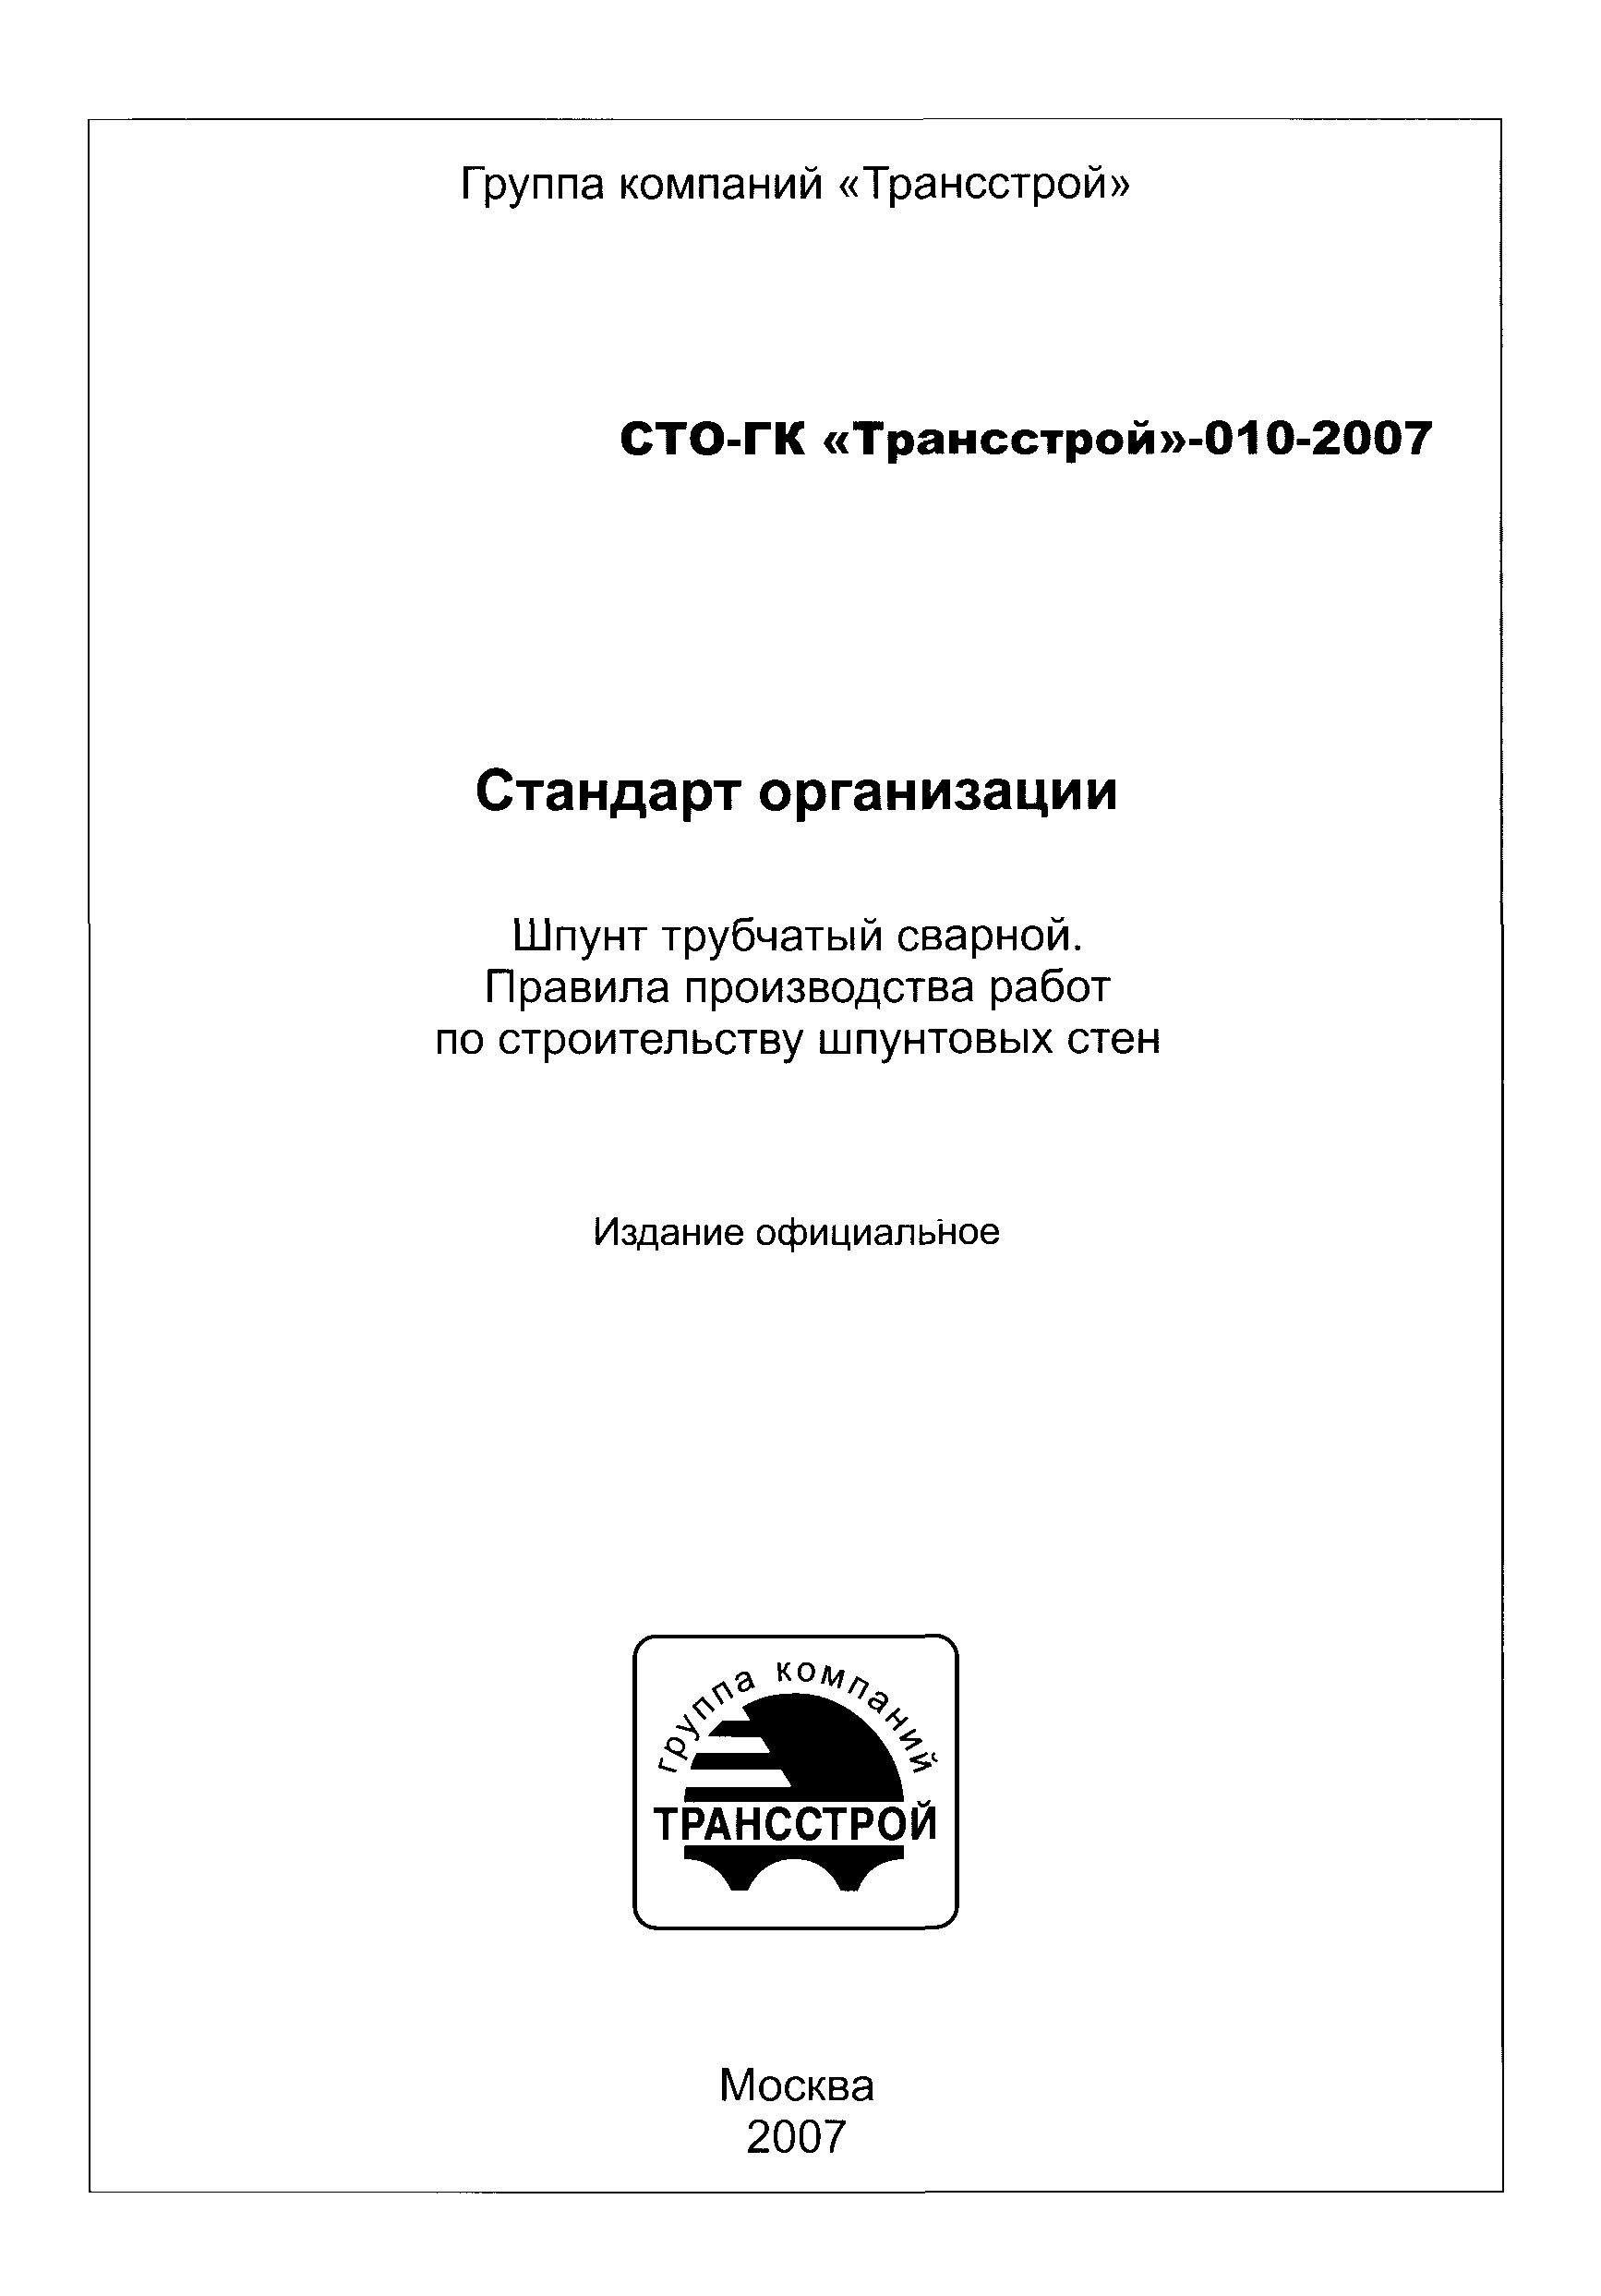 СТО-ГК "Трансстрой" 010-2007